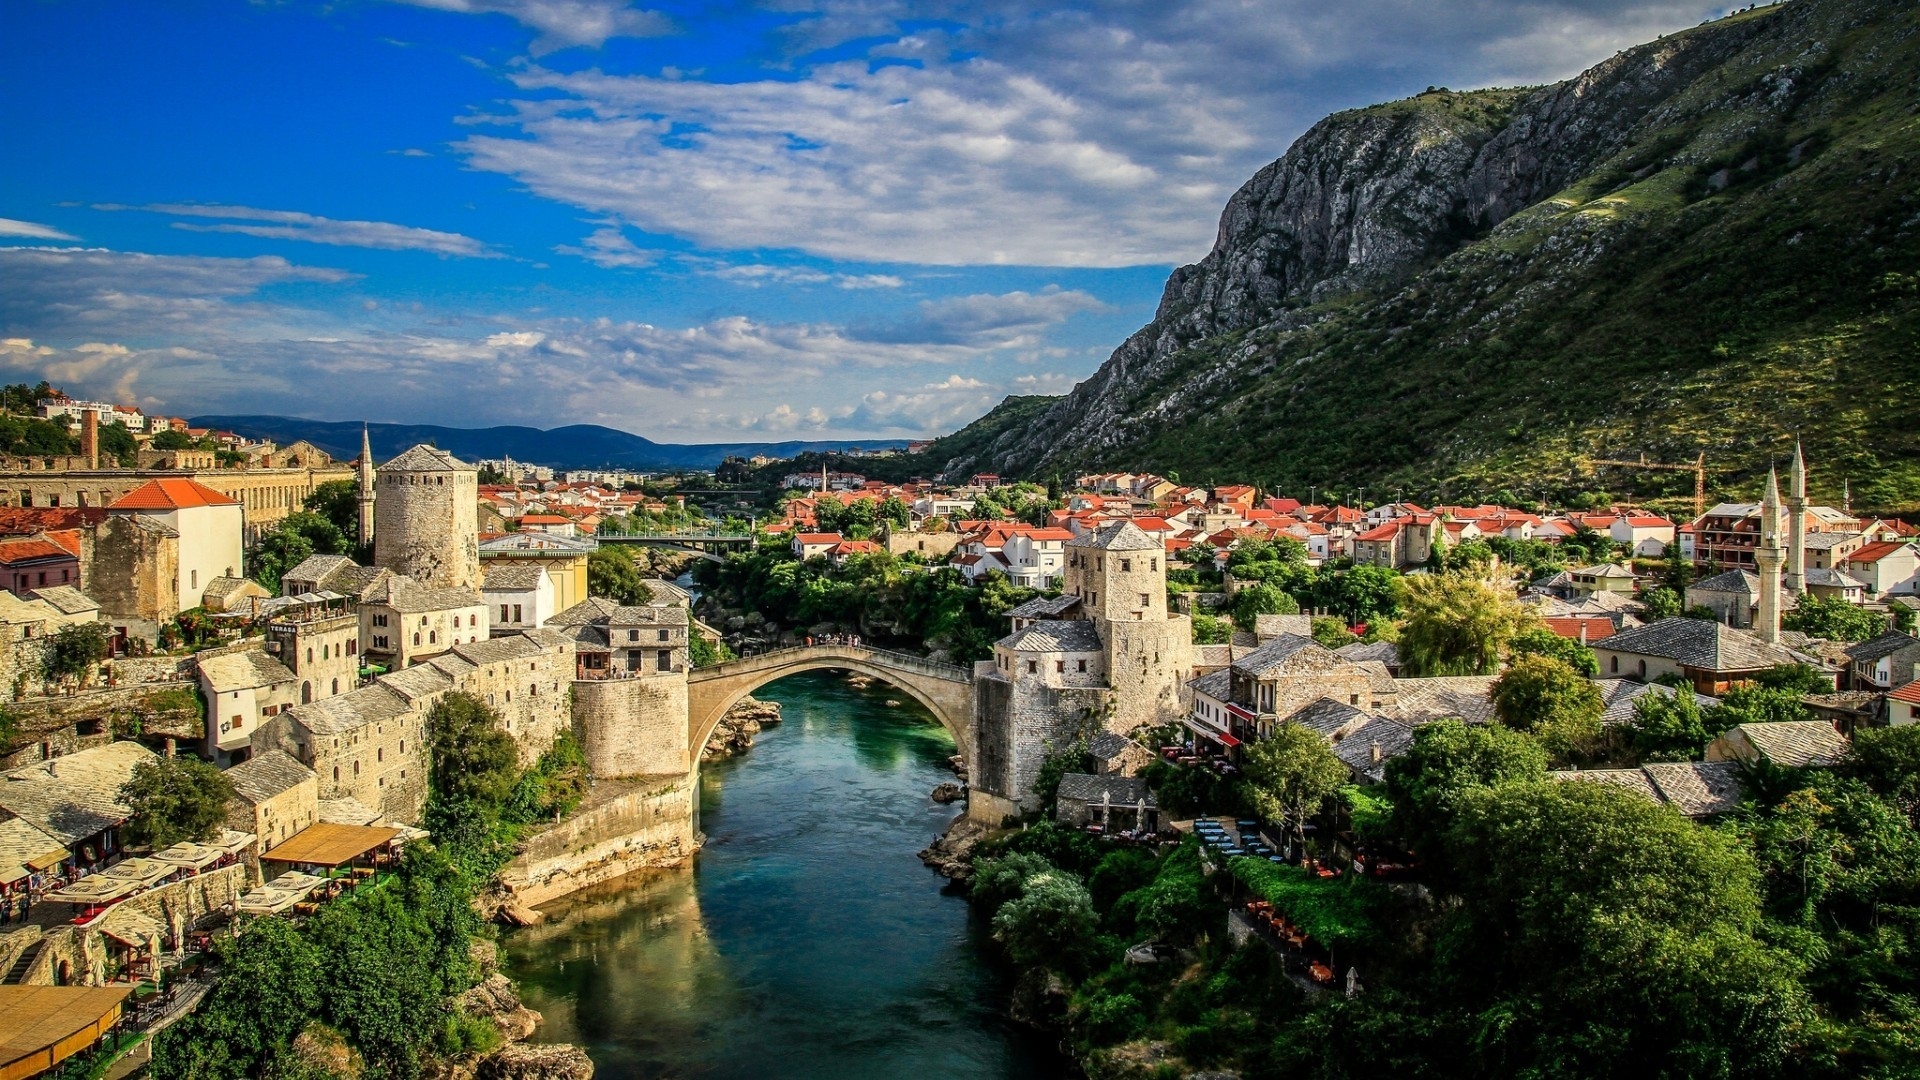 Mostar Bosna i Hercegovina for 1920 x 1080 HDTV 1080p resolution